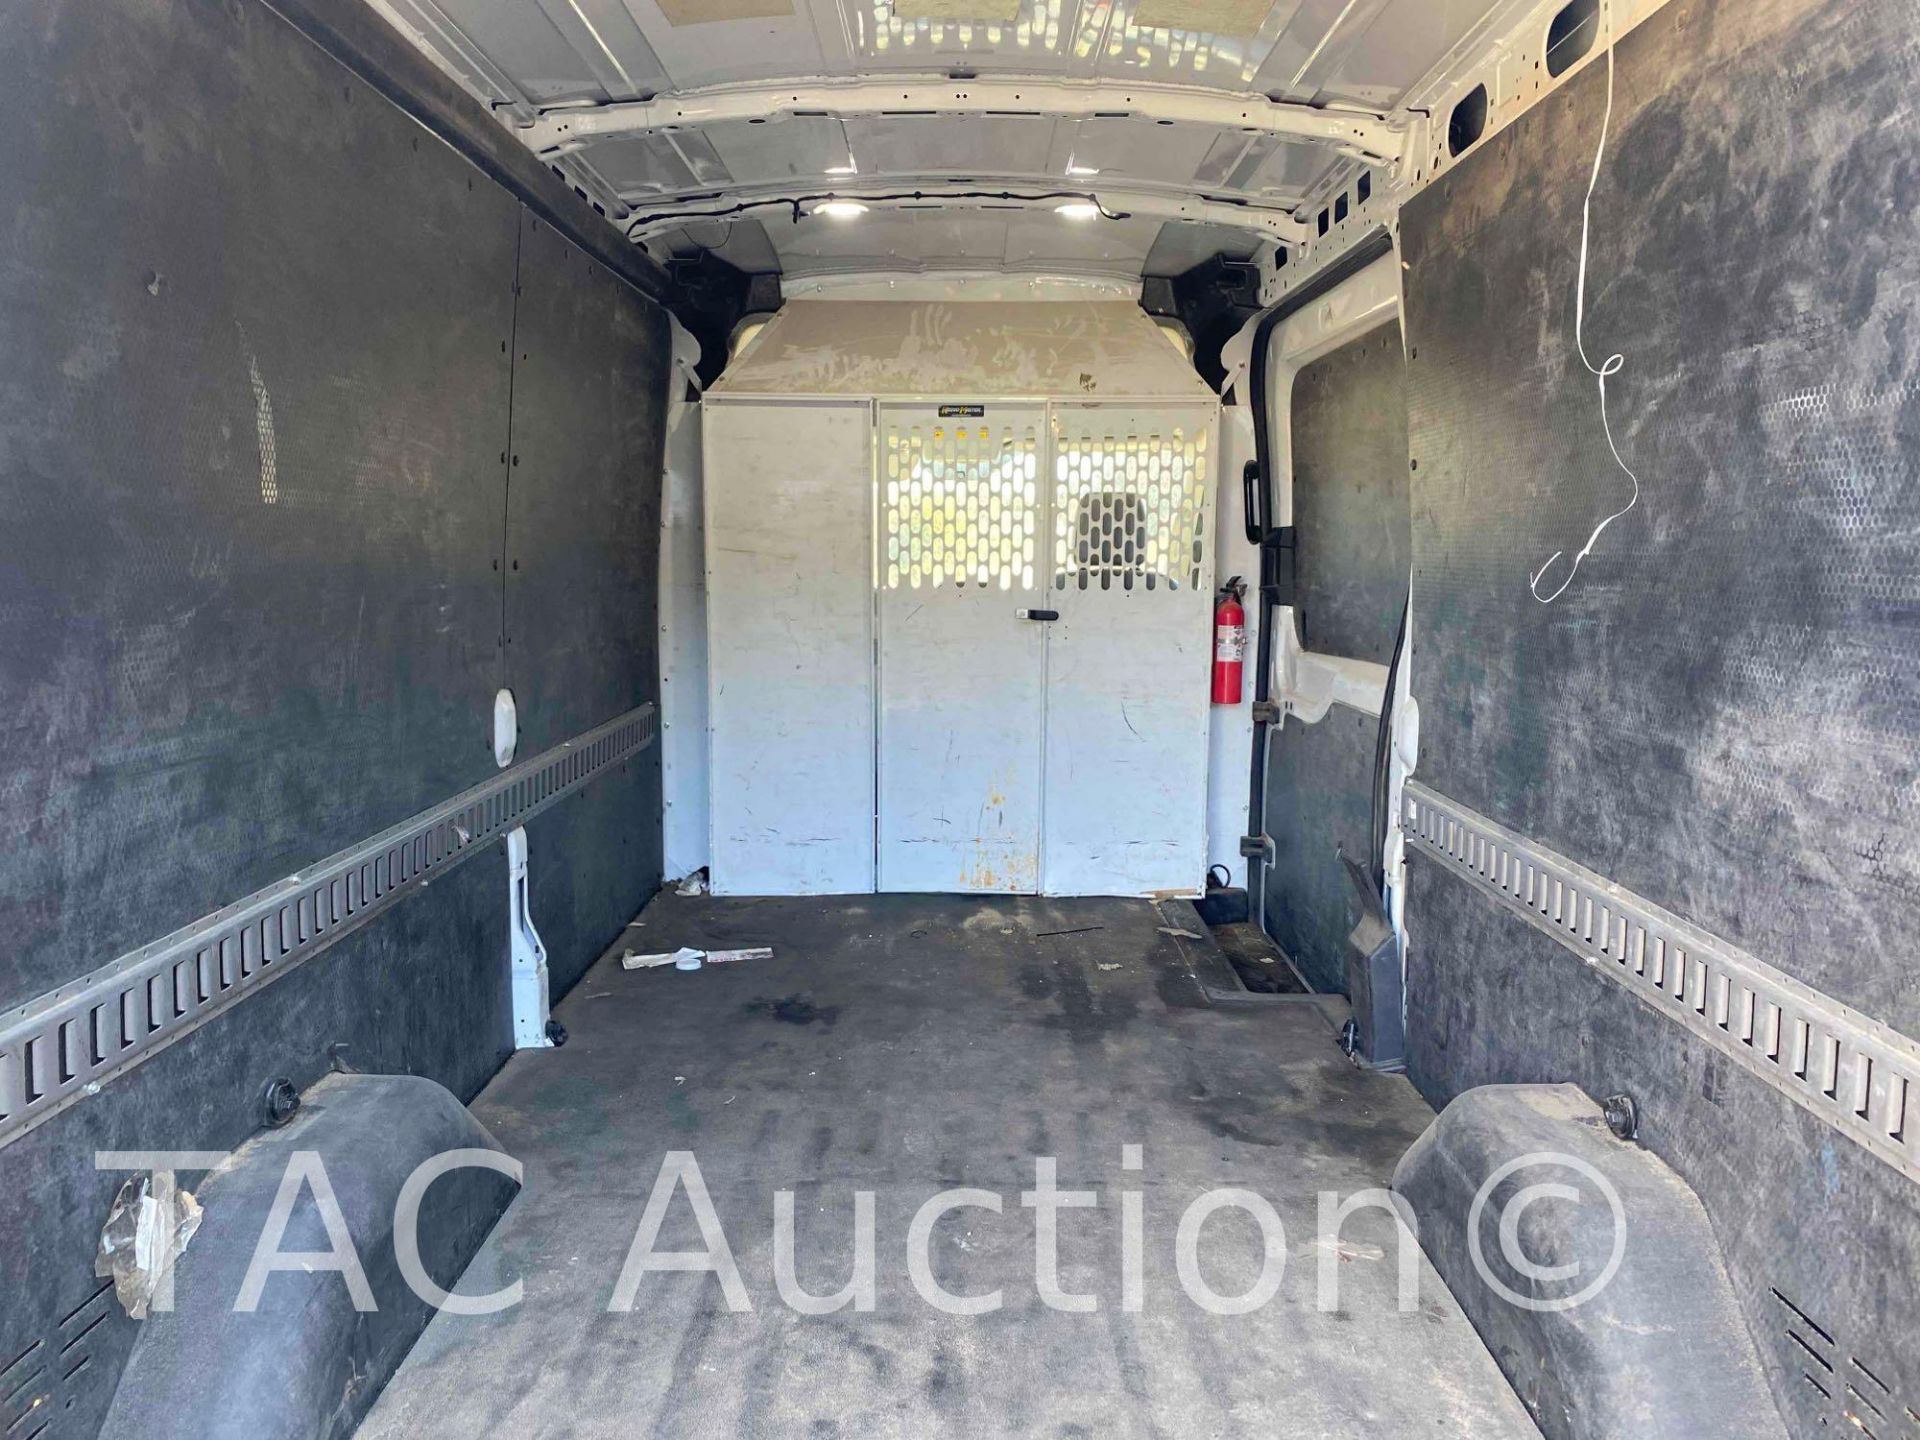 2019 Ford Transit 150 Cargo Van - Image 14 of 49